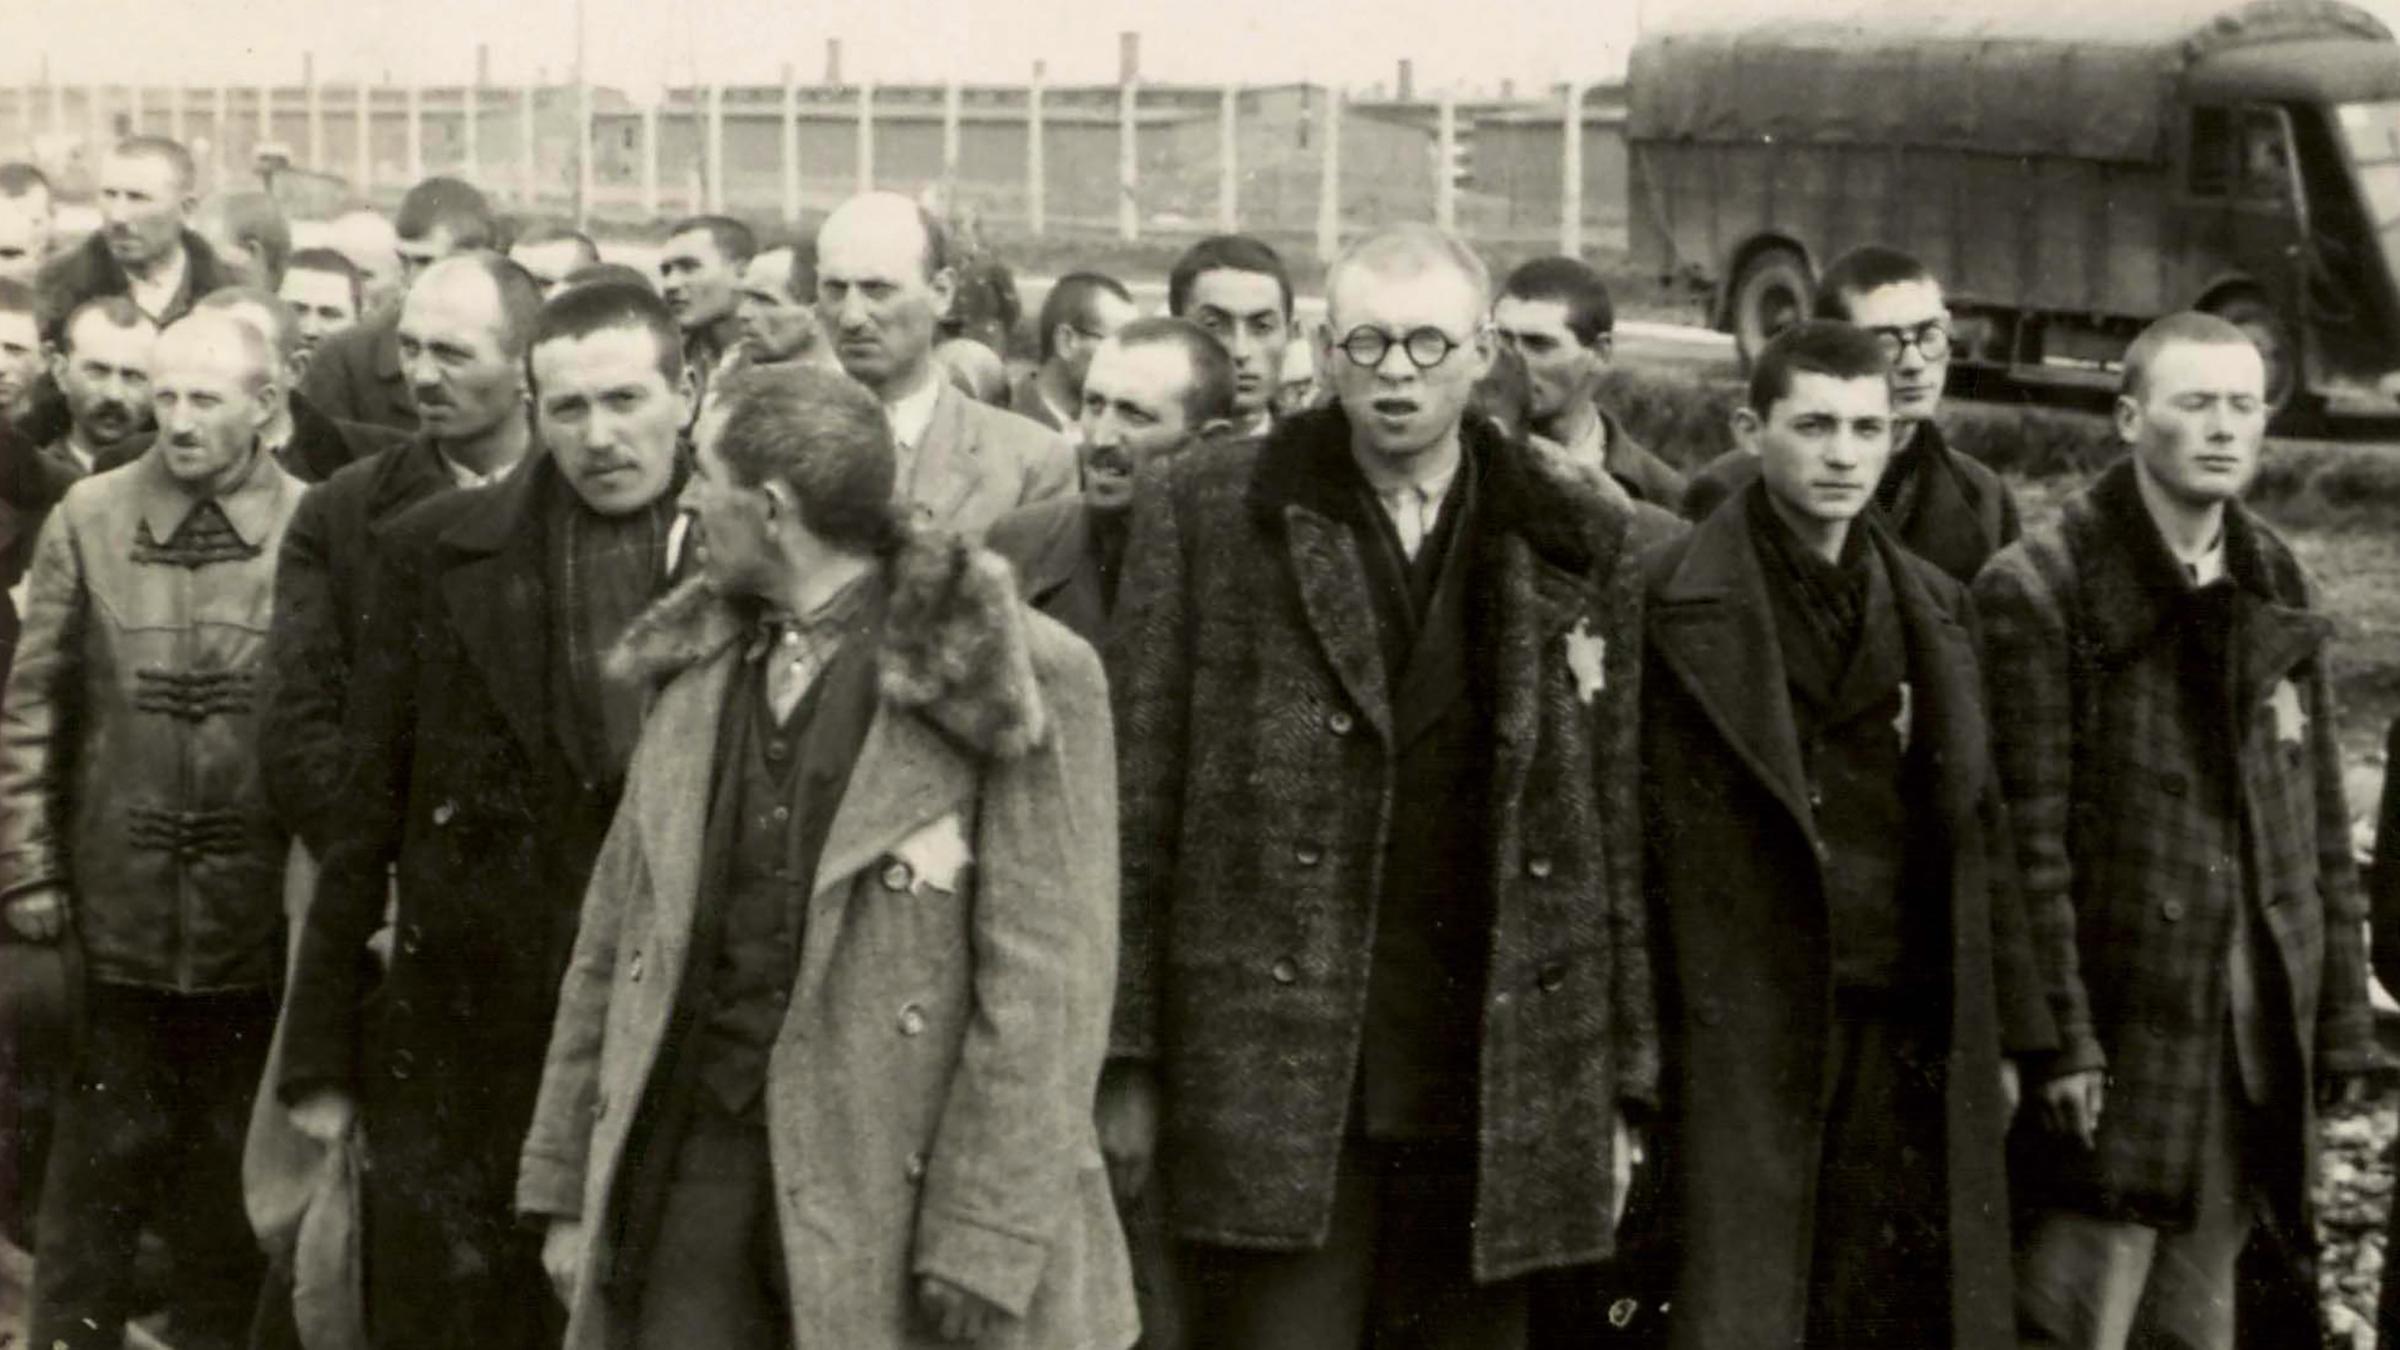 KZ Auschwitz-Birkenau - Nur die jungen Männer aus dem Bild zuvor stehen jetzt im „Wartebereich“ auf den Gleisen.  Alle alten Männer sind verschwunden. 